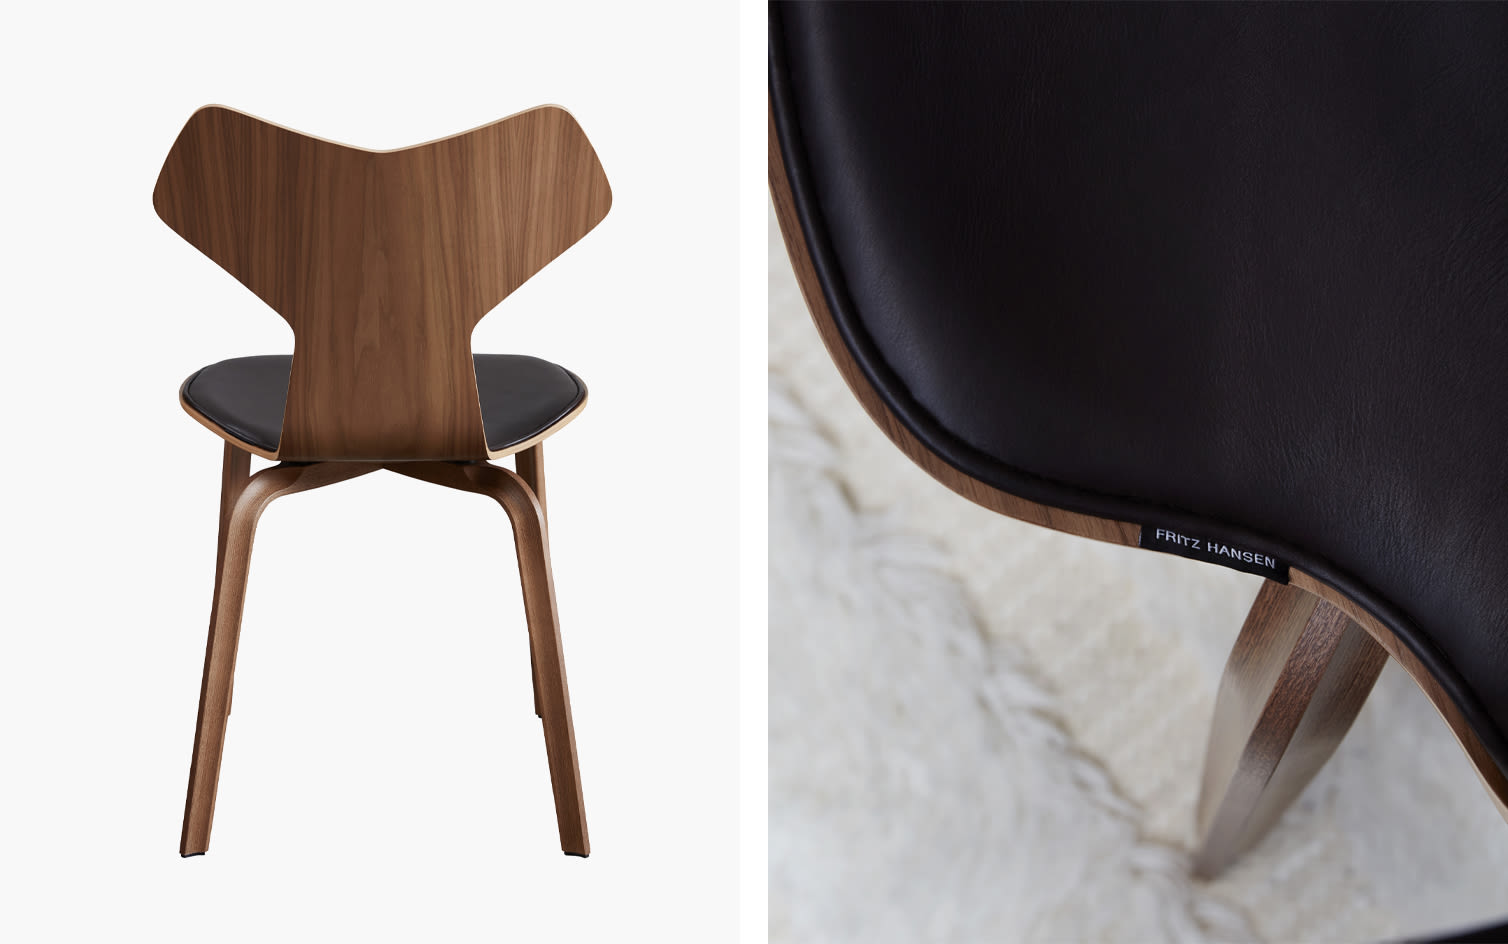 Editorial Splash 5 | Ikoniska stolar från Fritz Hansen – dansk design i sitt esse